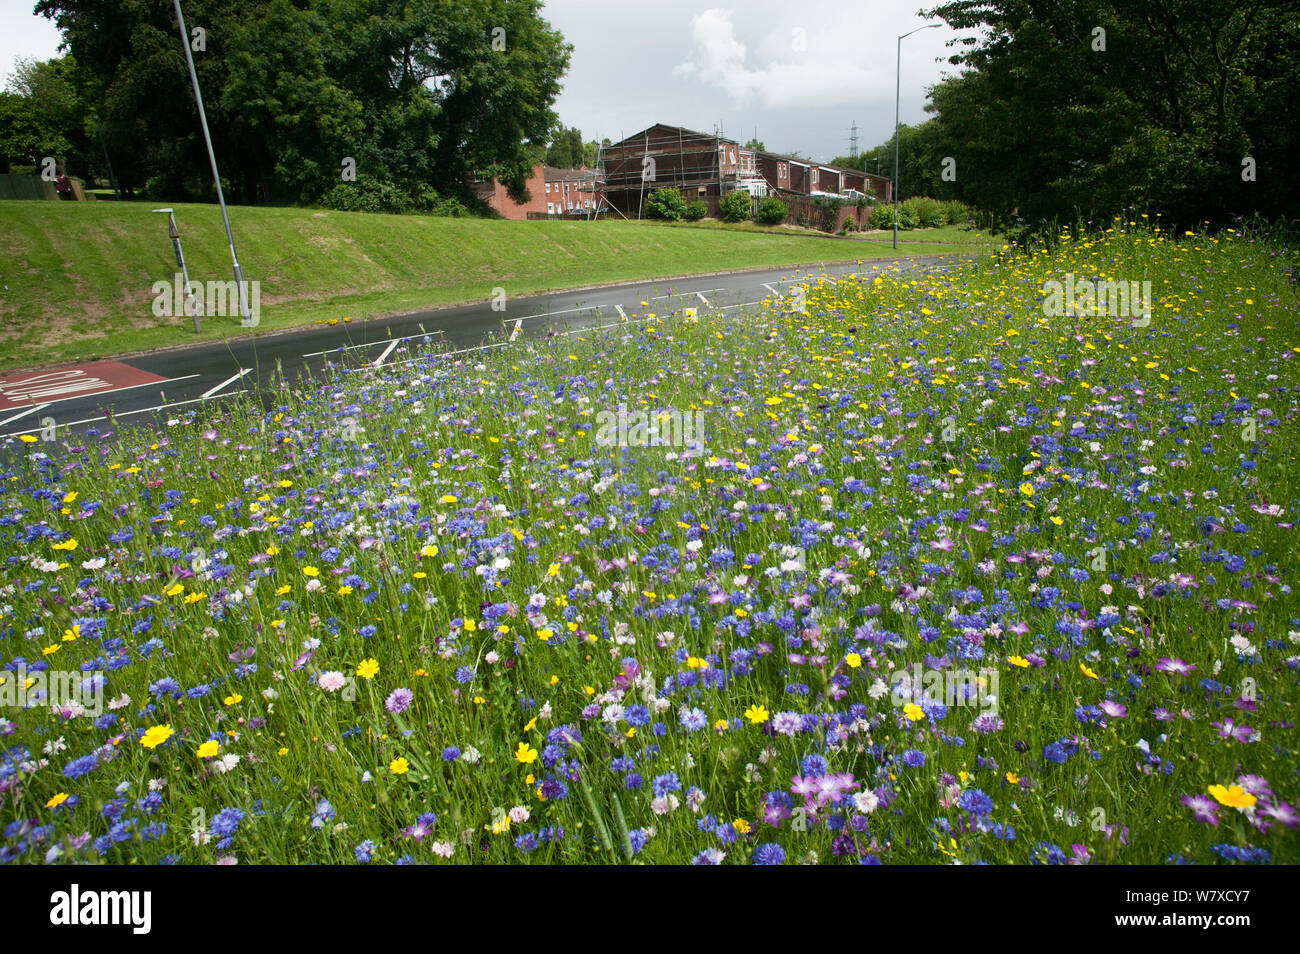 Wildblumen gepflanzt am Straßenrand Bienen als Teil der Freunde der Erde&#39 anzuziehen; Biene Freundlich &#39; Kampagne mit der Bron Afon Community Housing Association, Cwmbran, South Wales, UK. Juli 2014. Stockfoto